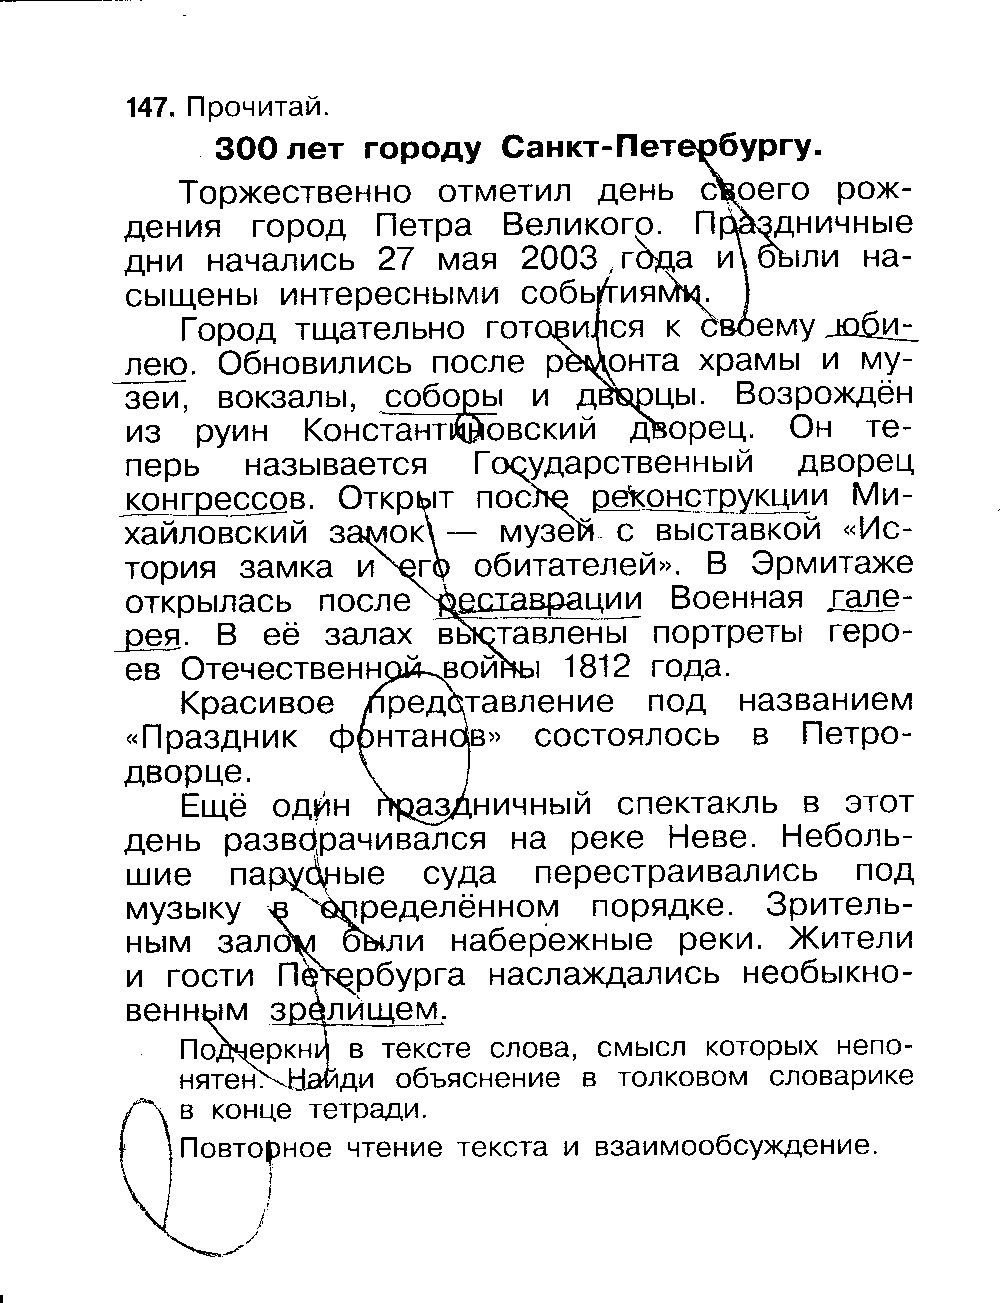 ГДЗ Русский язык 3 класс - стр. 60